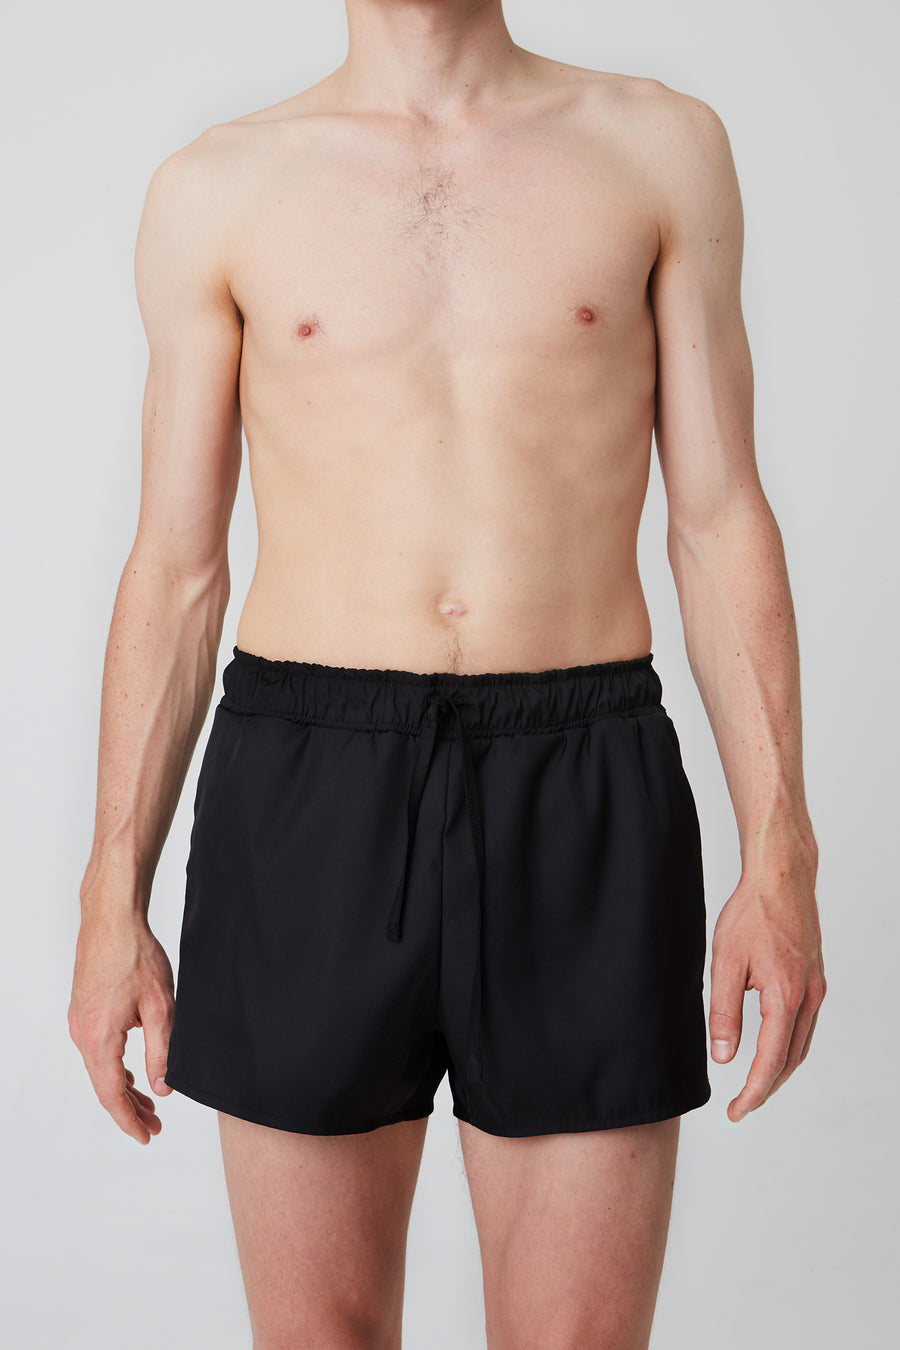 Shorts – boxer 1, black